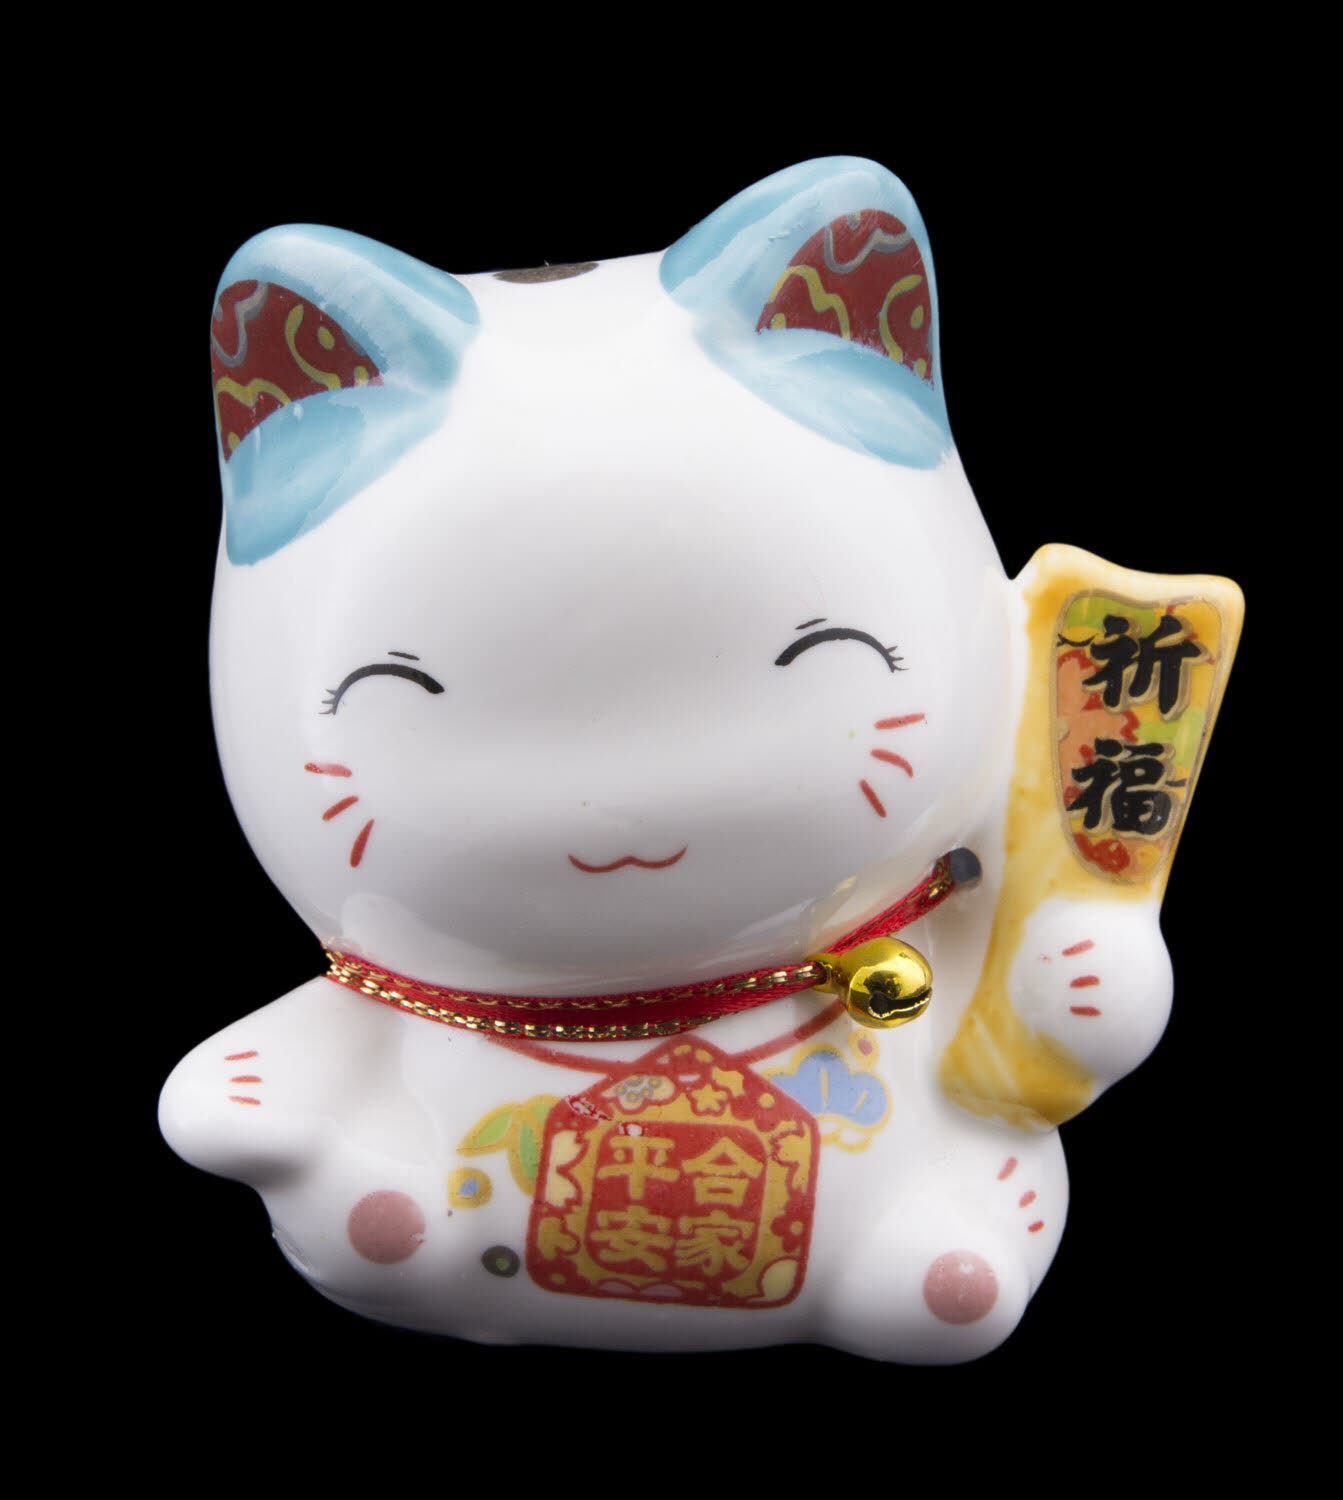 Tirelire chat japonais 10cm ceramique Made in Japan Maneki Neko 40648